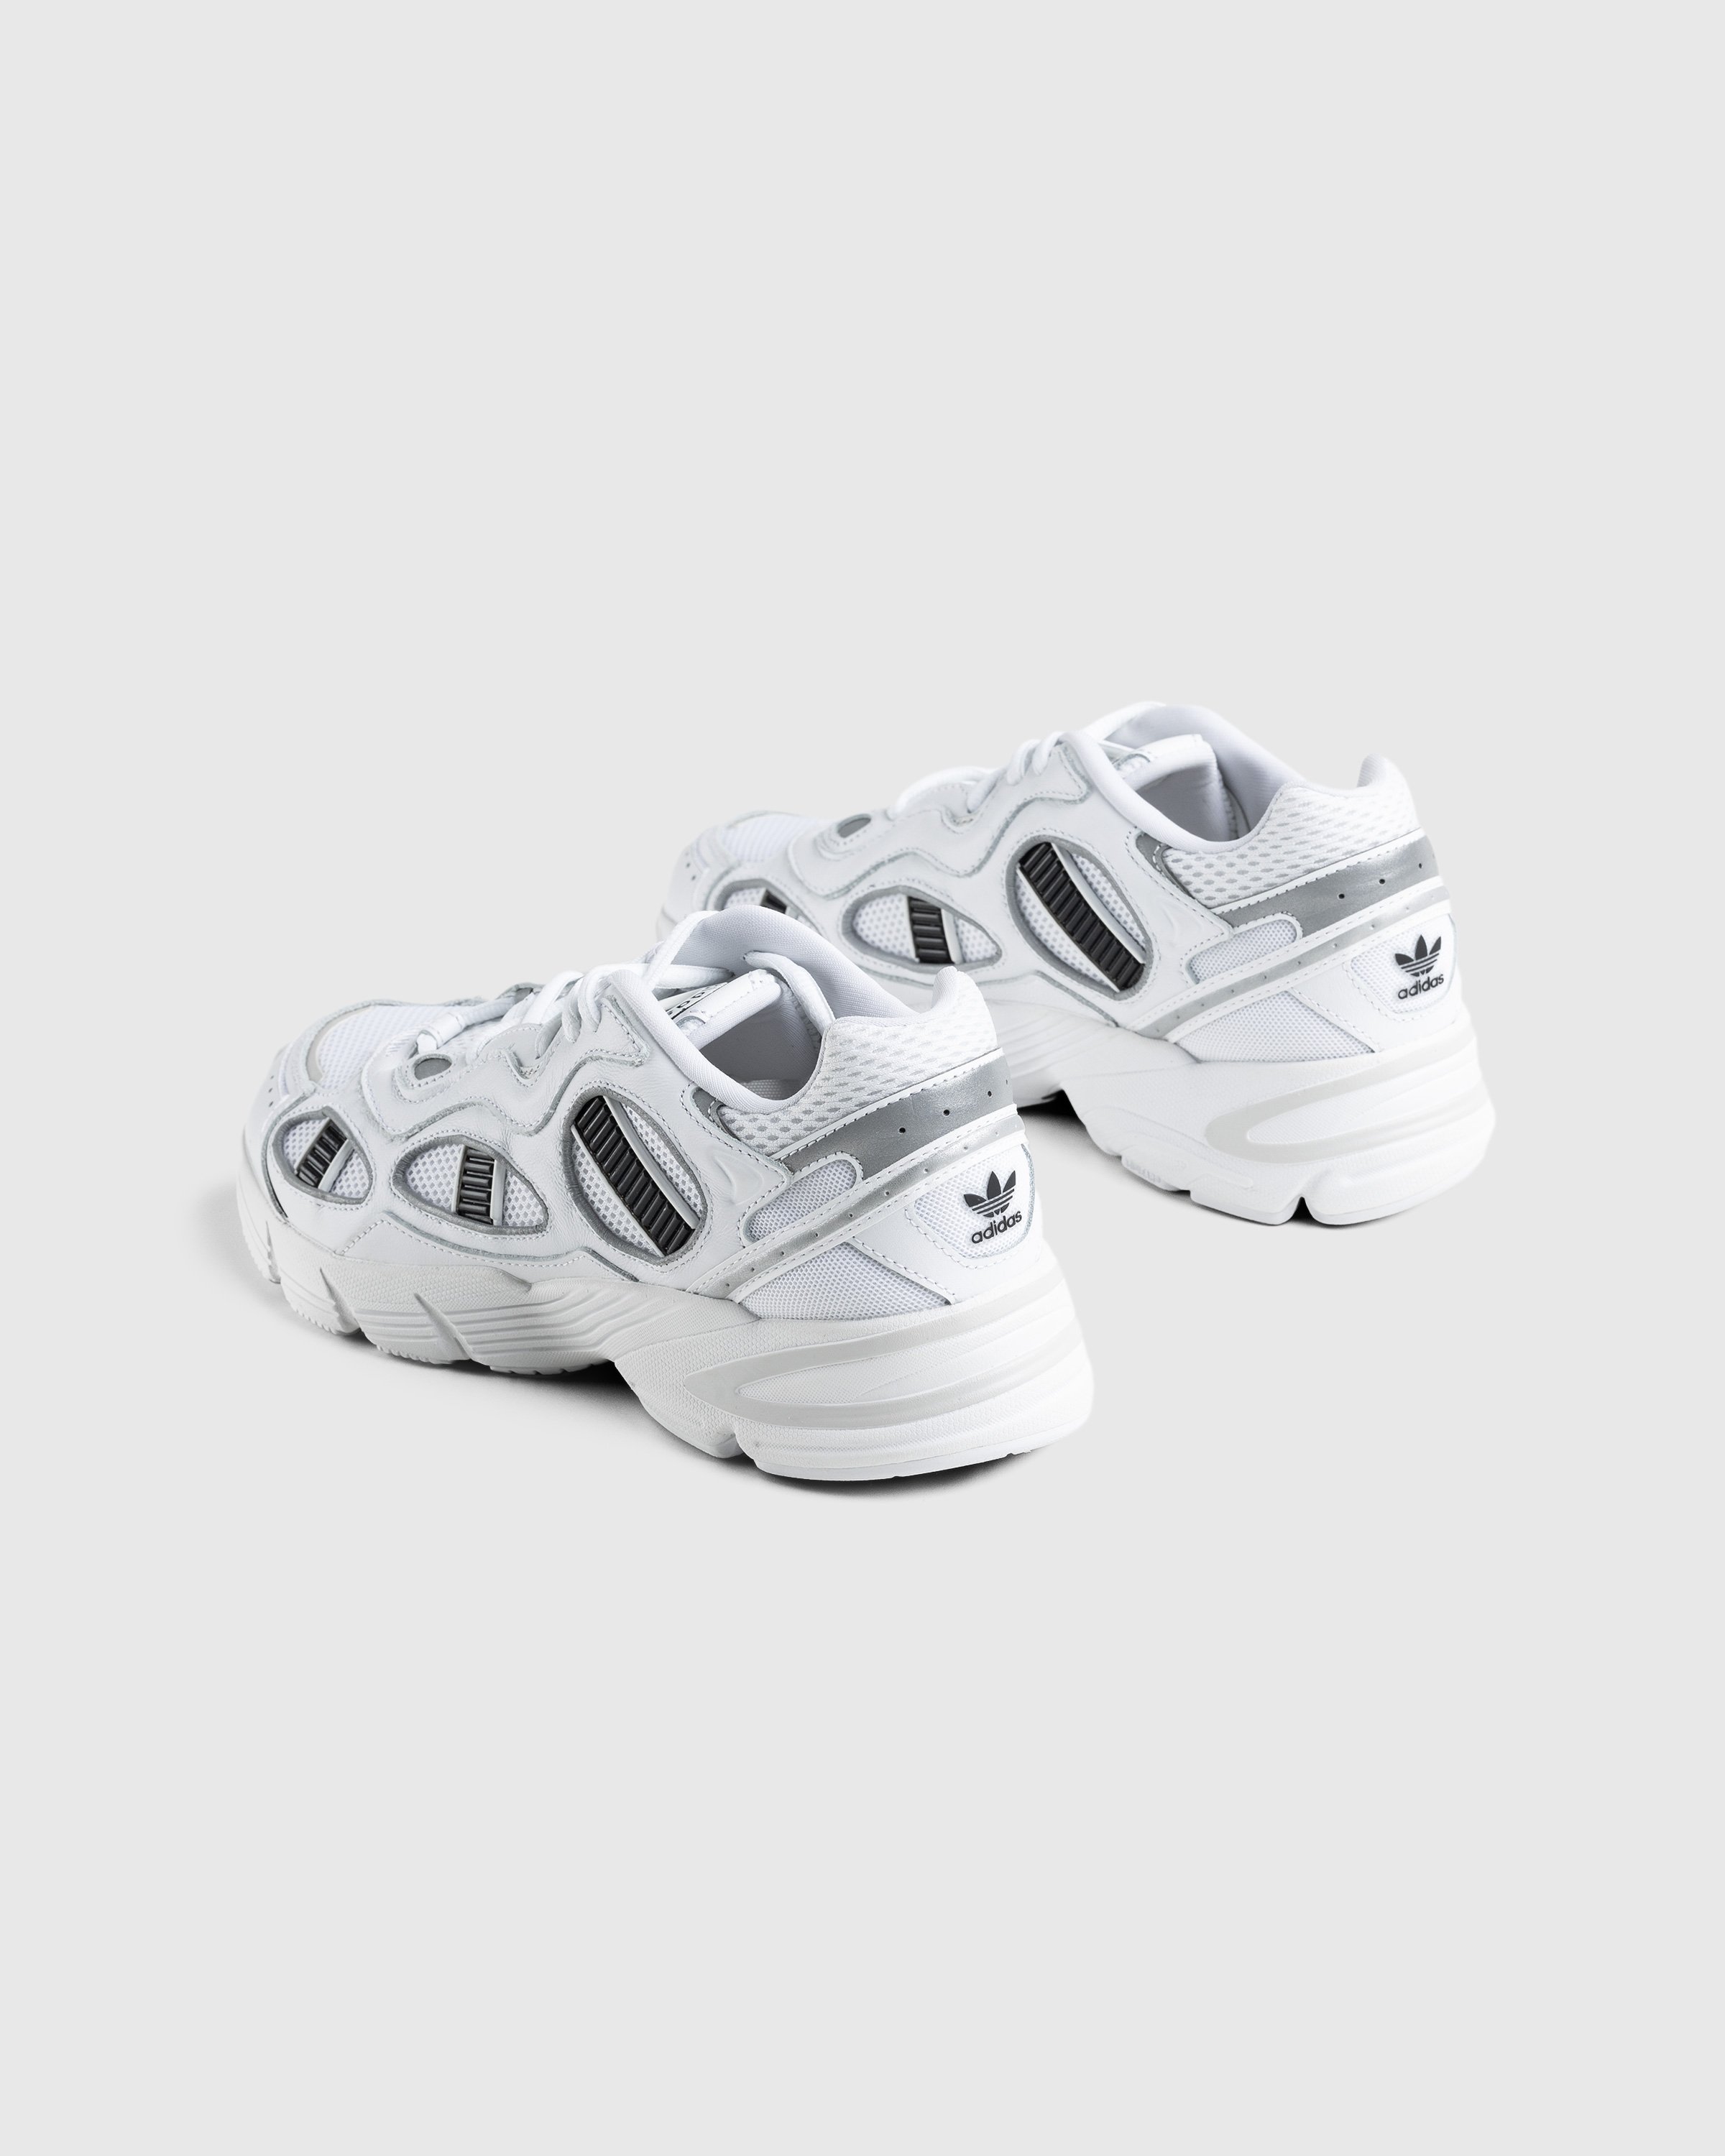 Adidas - Astir Sn White - Footwear - White - Image 4